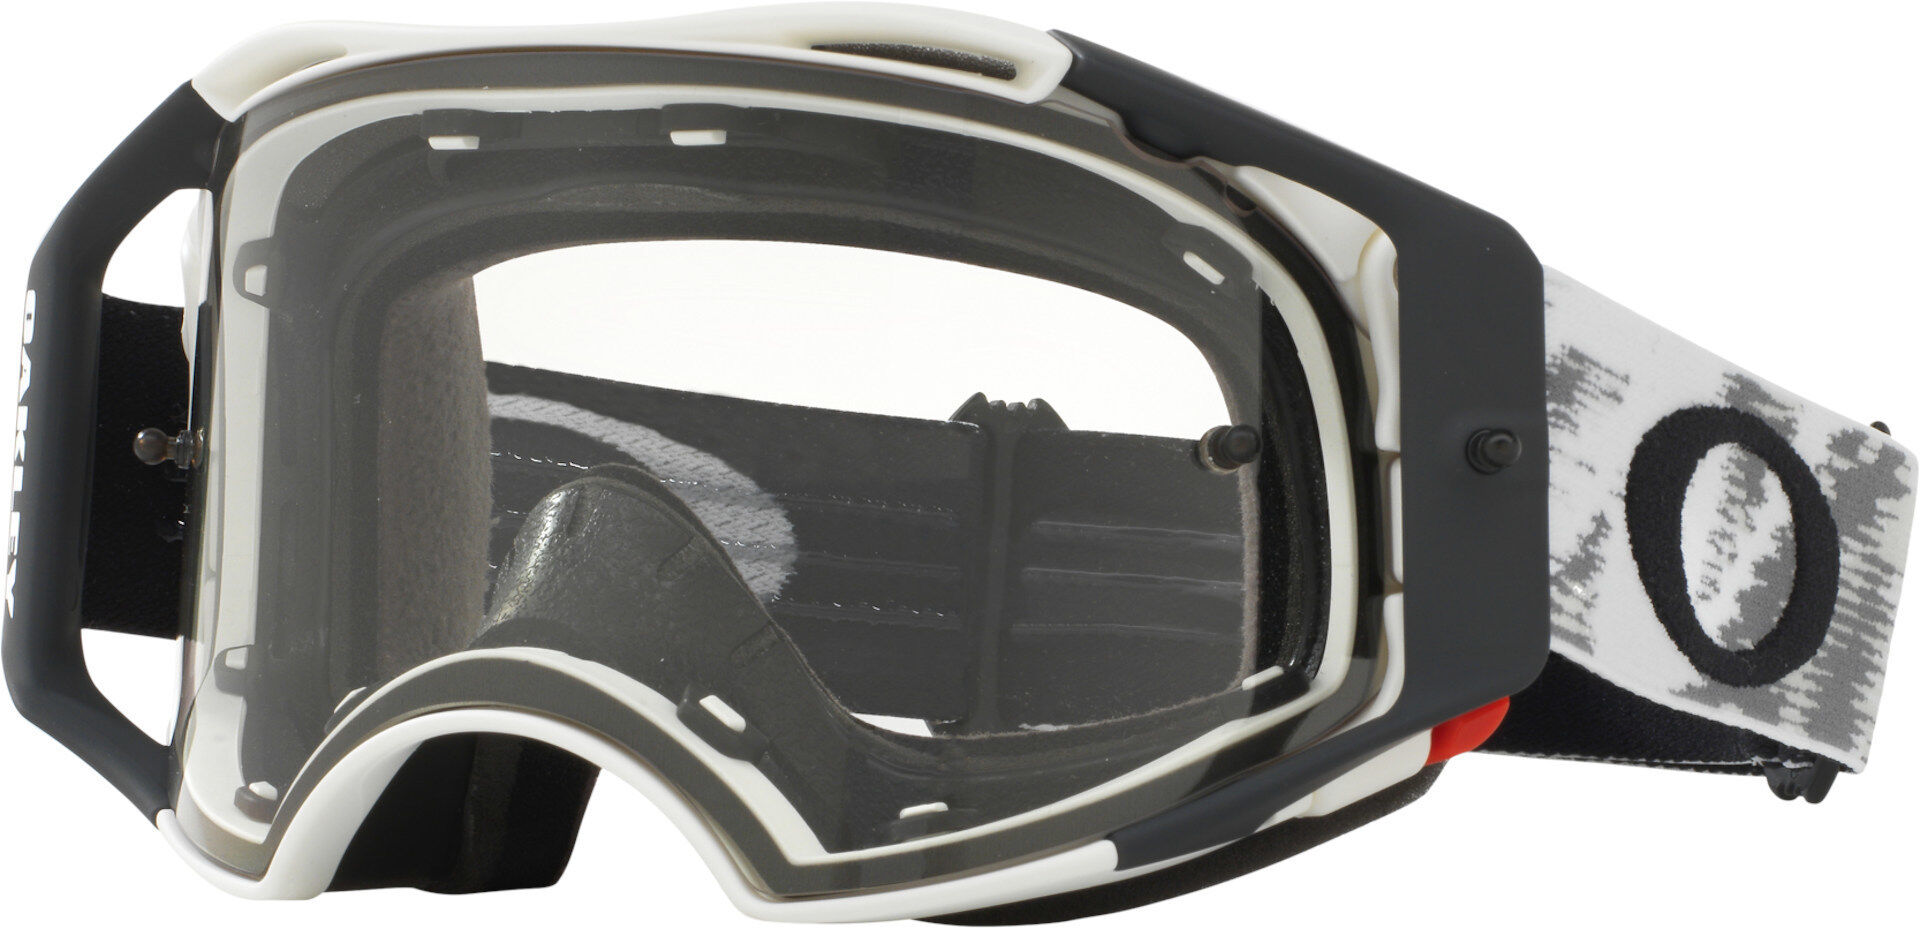 Oakley Airbrake Matte White Speed RR Gafas de Motocross - Negro Blanco (un tamaño)